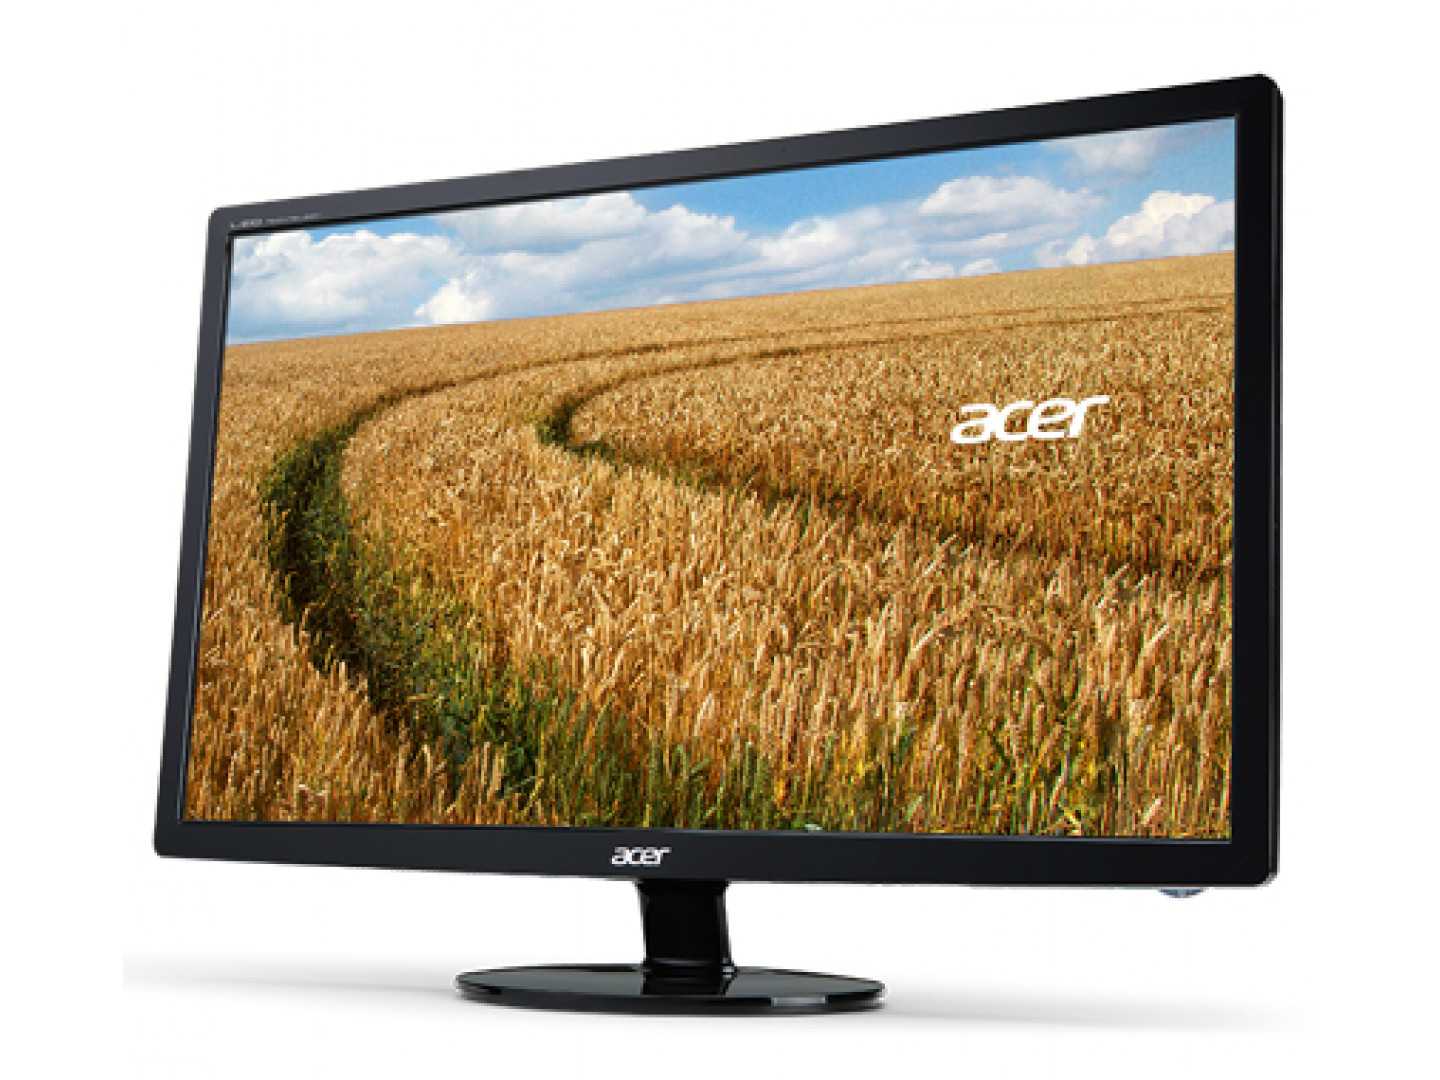 Acer g246hlbbid (черный) - купить , скидки, цена, отзывы, обзор, характеристики - мониторы